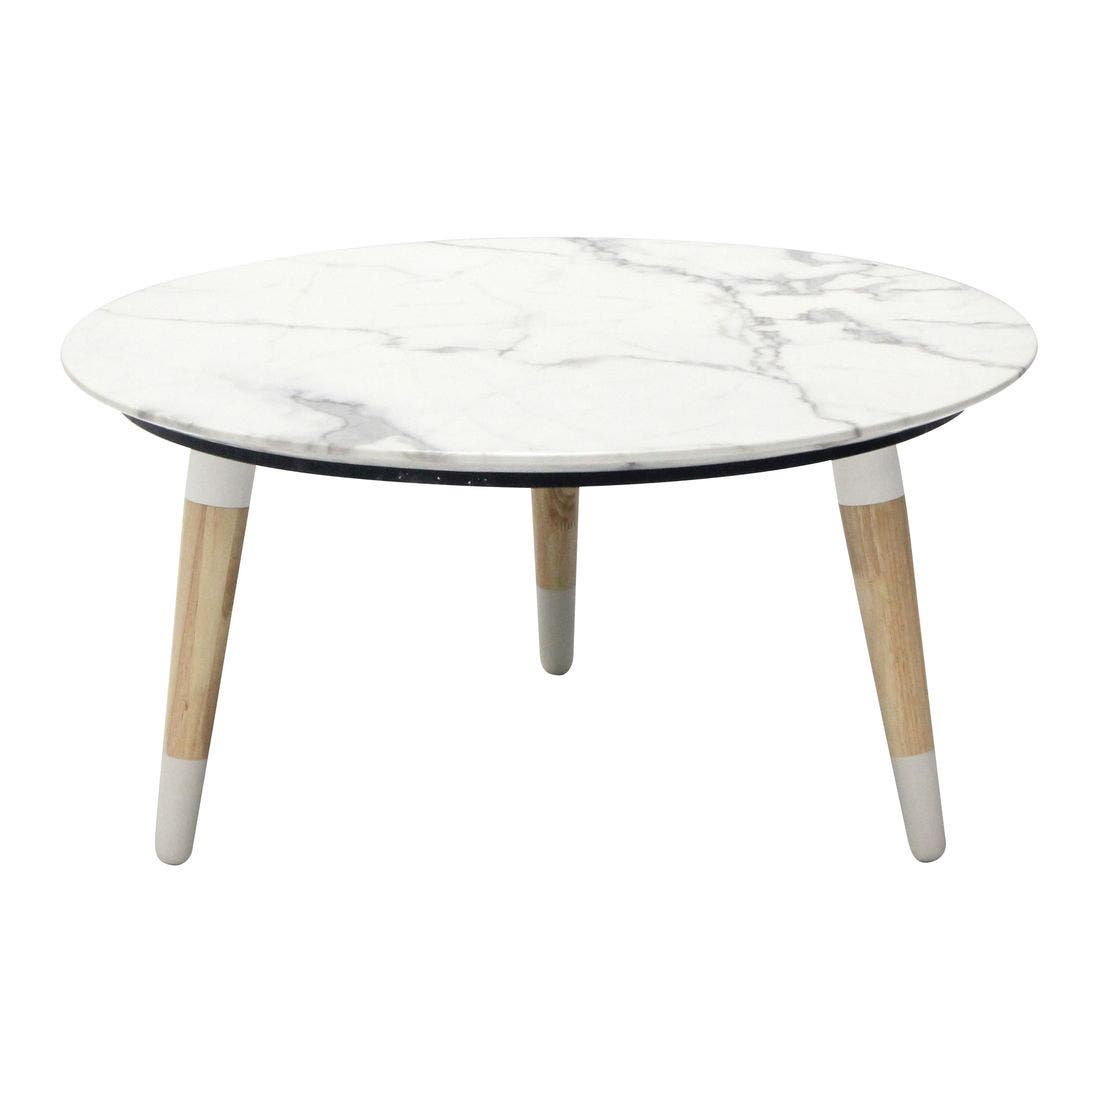 โต๊ะกลาง โต๊ะกลางไม้ท๊อปหิน รุ่น Racco สีสีขาว-SB Design Square